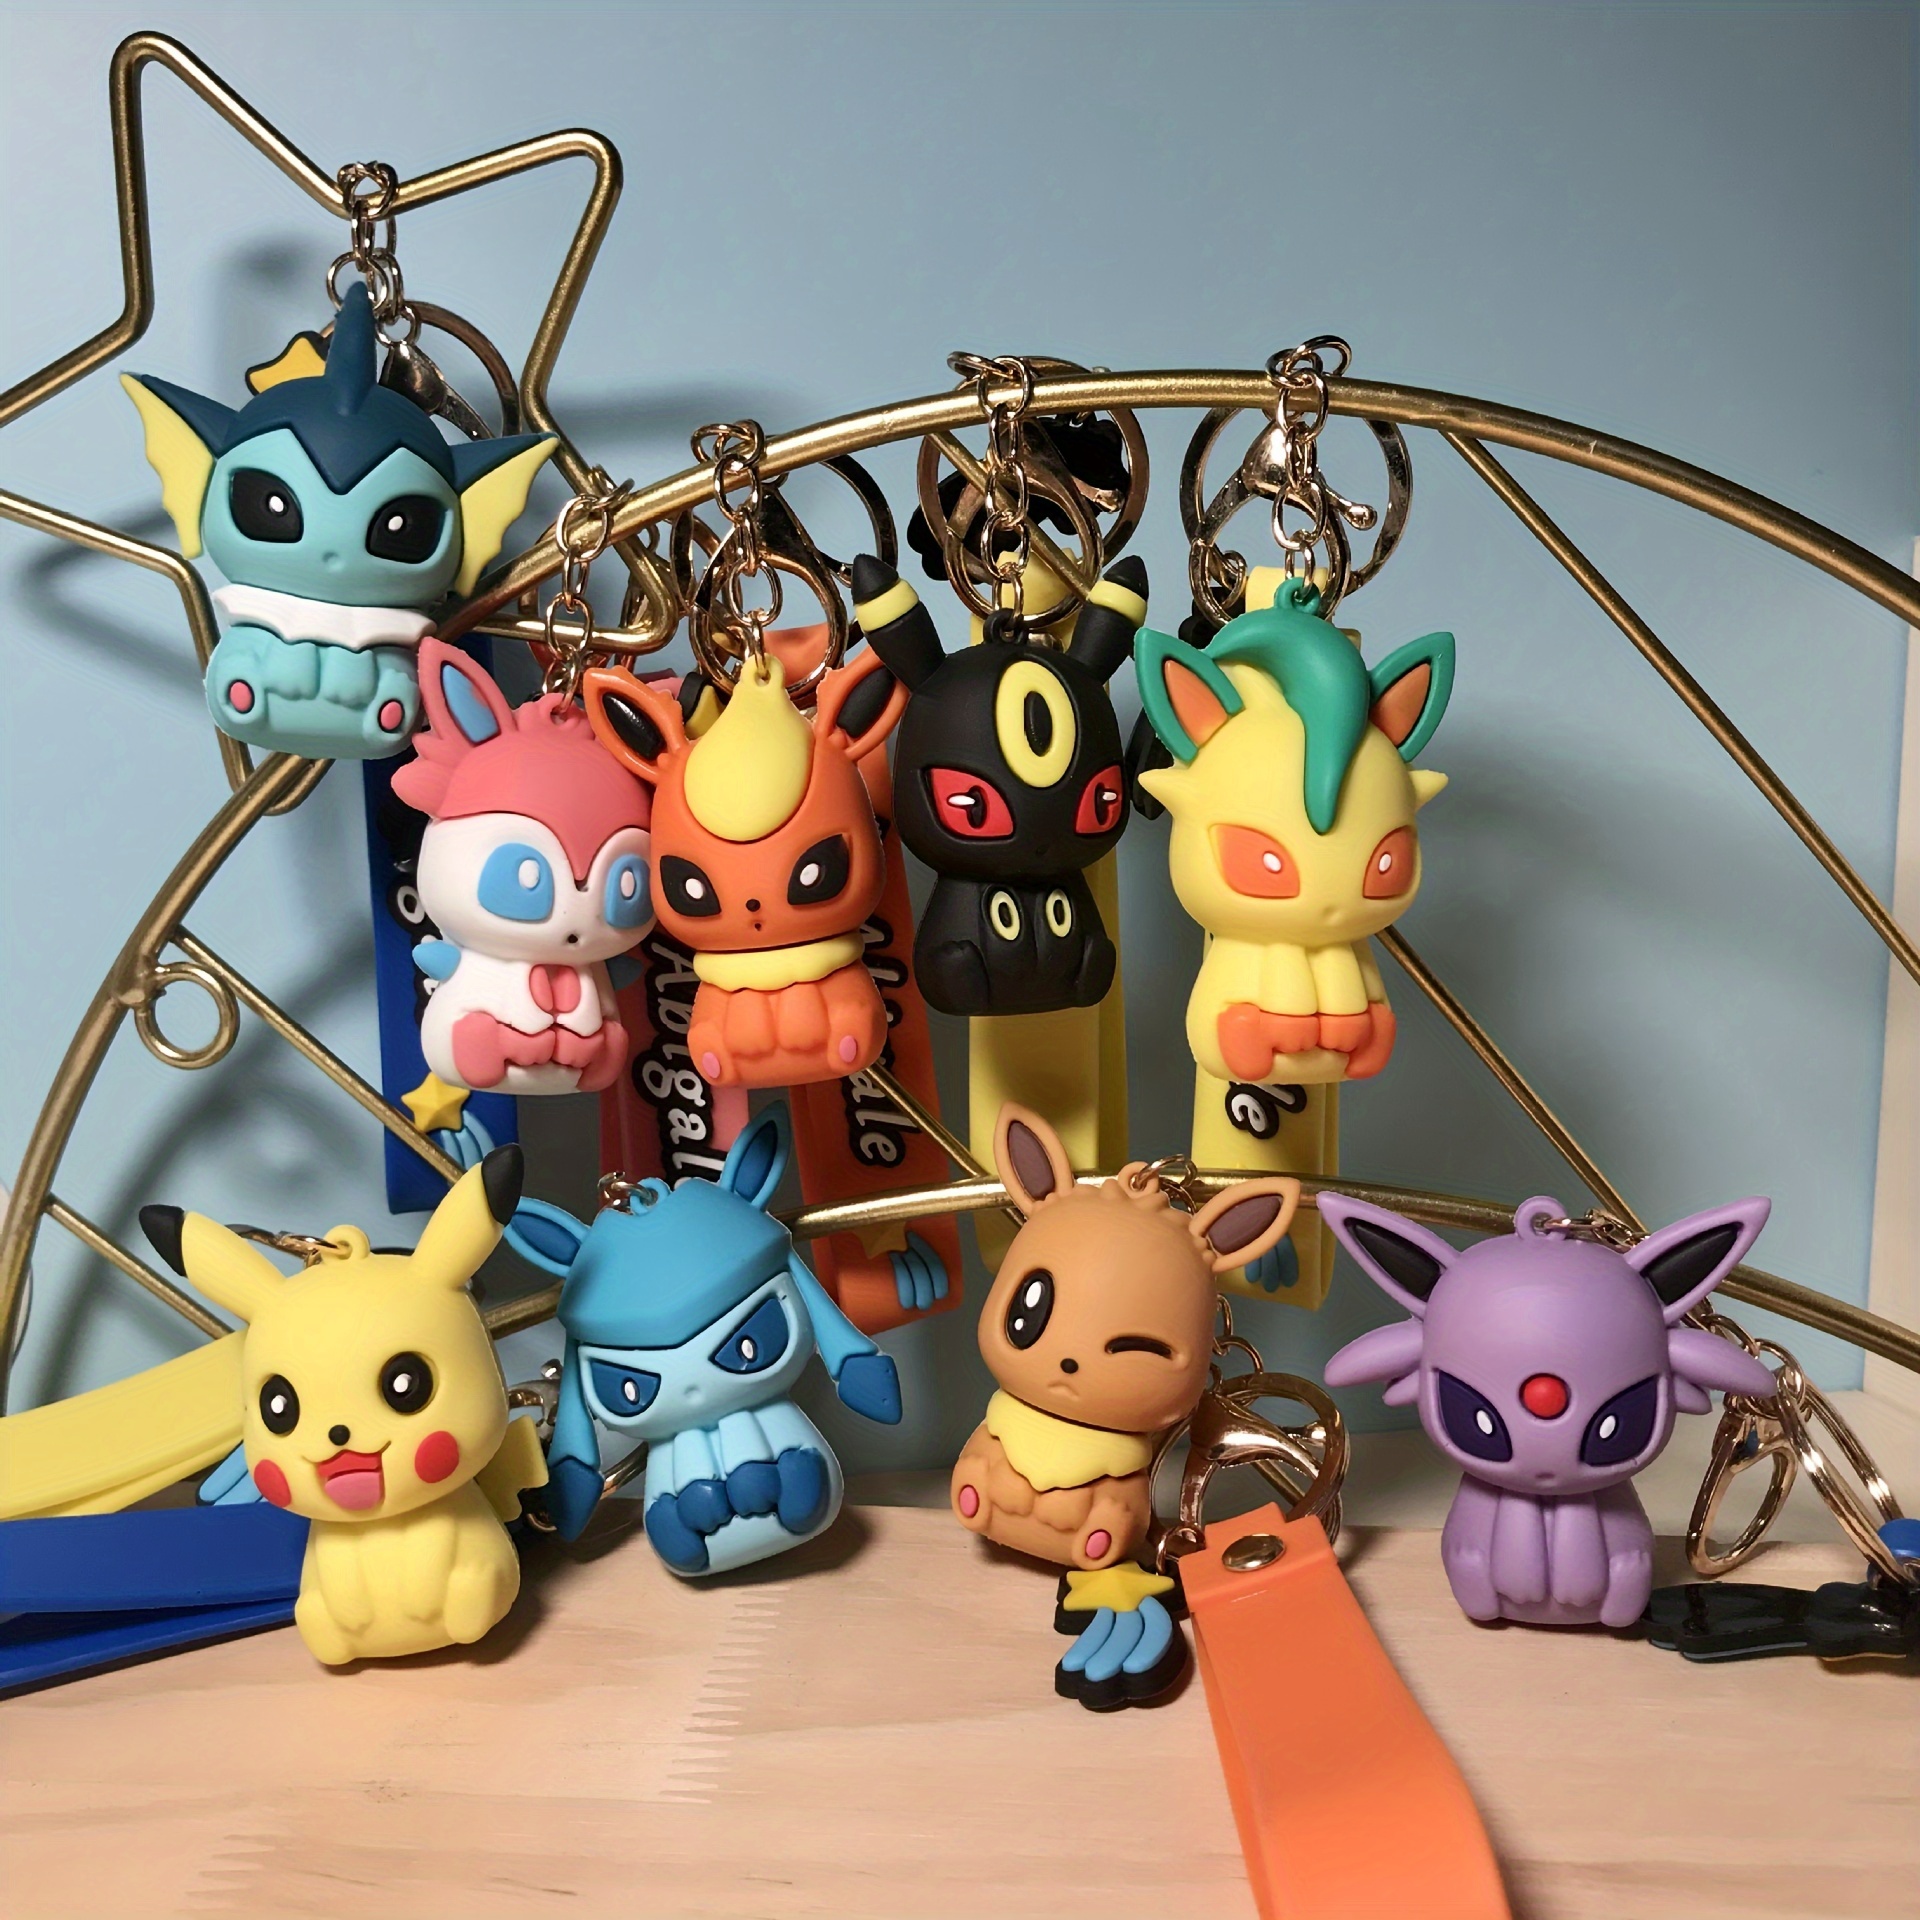 8 Pçs/Set Pokeball Pokemon Brinquedos PVC Monstro Bola Elf Action Figure  Com Caixa Original De Aniversário Das Crianças